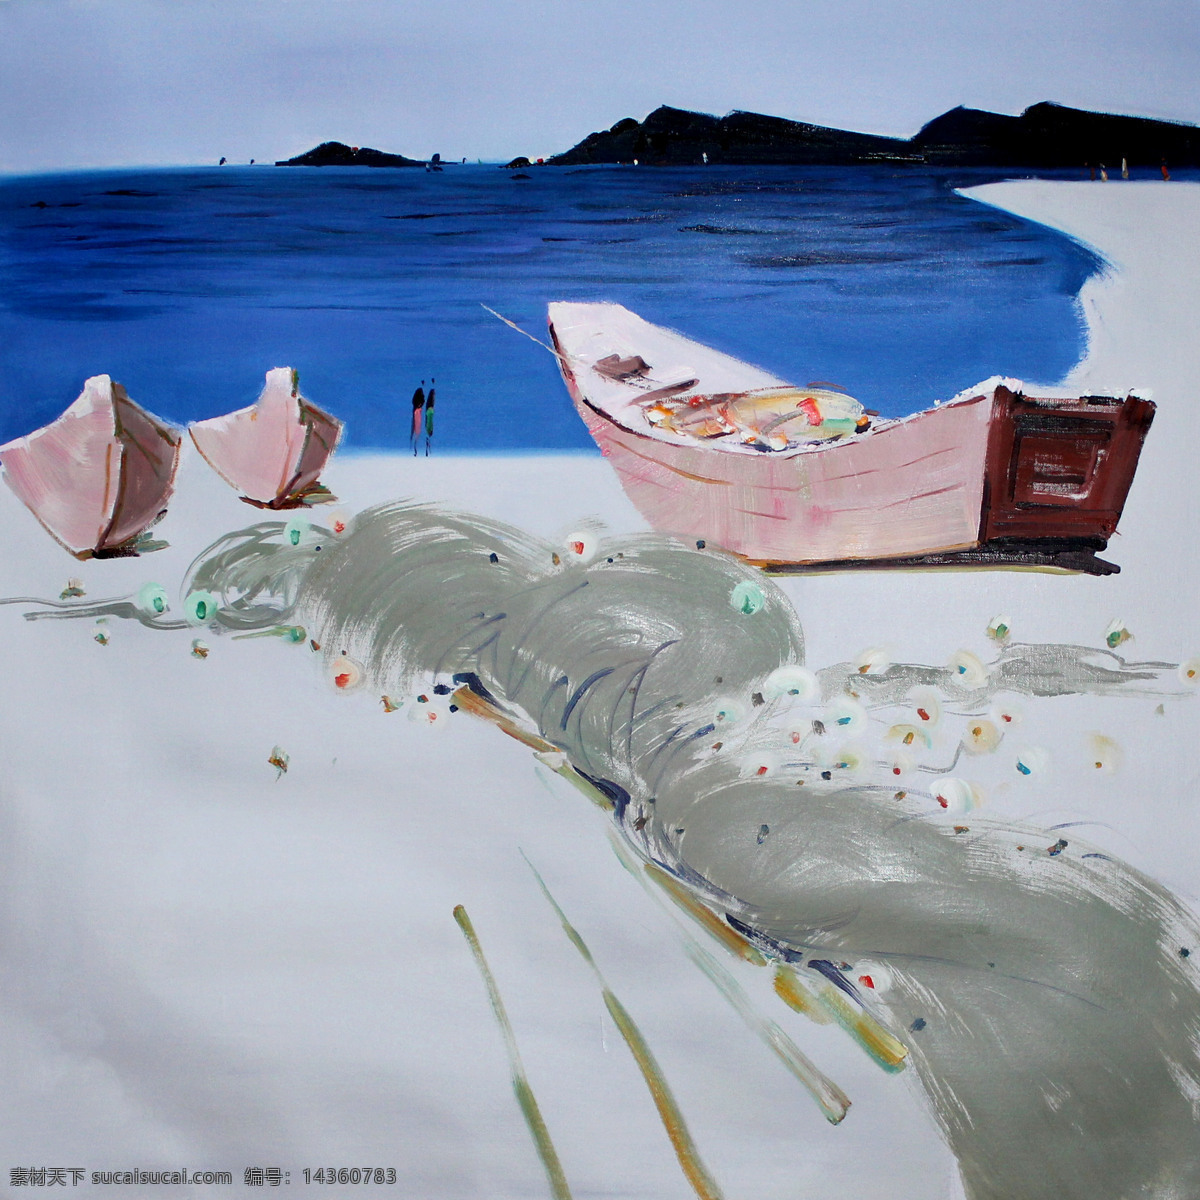 海边 船只 大海 风景画 海景 海滩 绘画书法 美术 油画 白沙滩 油画艺术 油画作品45 文化艺术 psd源文件